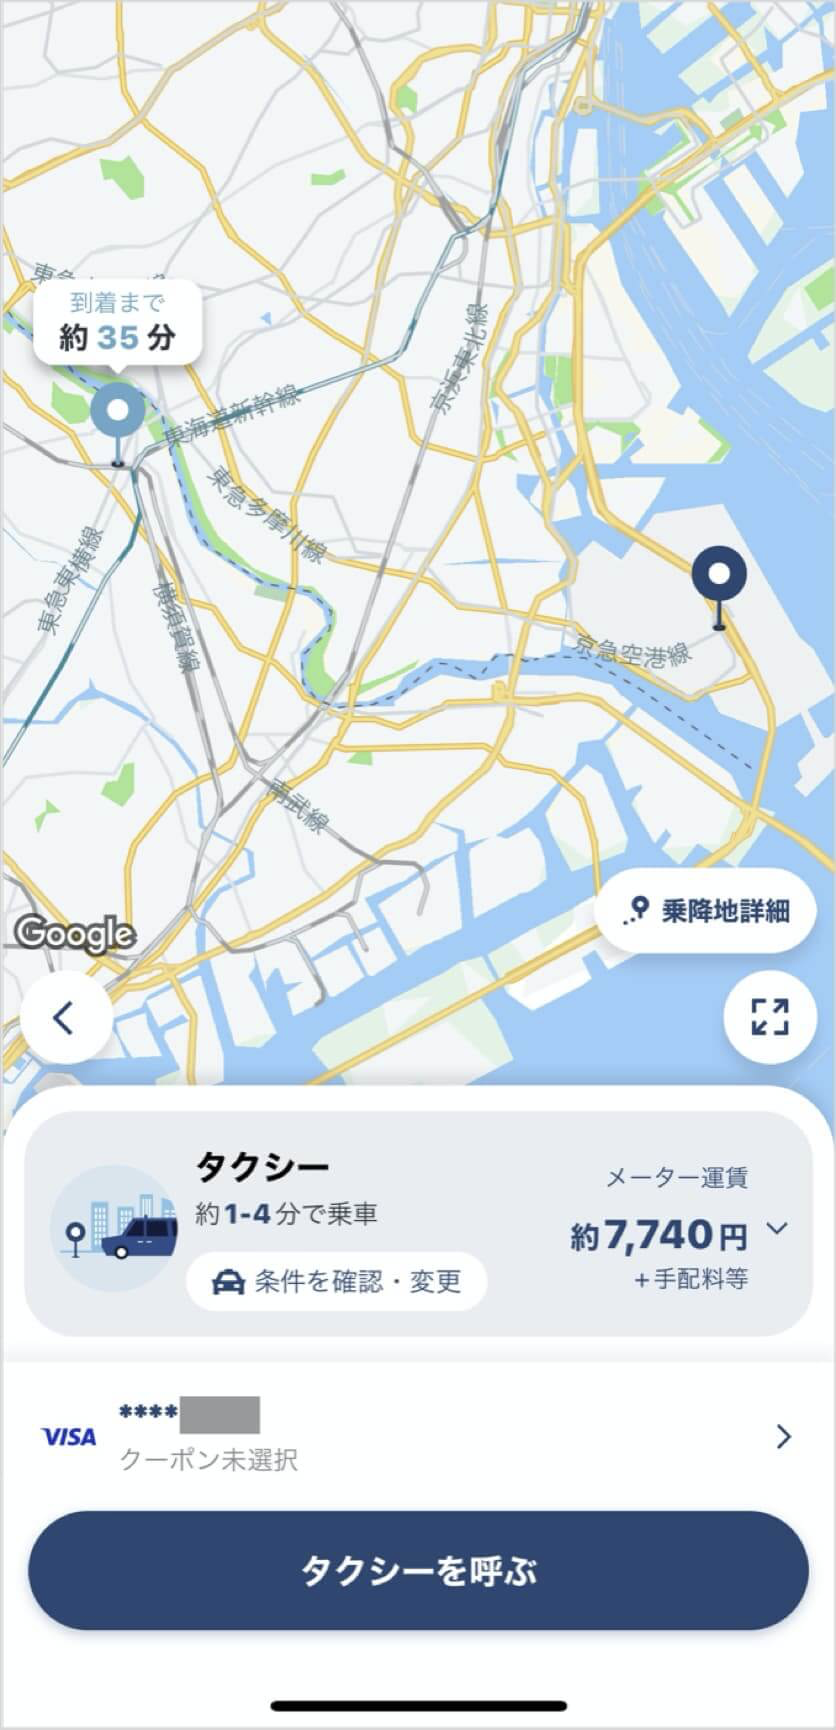 羽田空港から武蔵小杉までのタクシー料金・所要時間まとめ